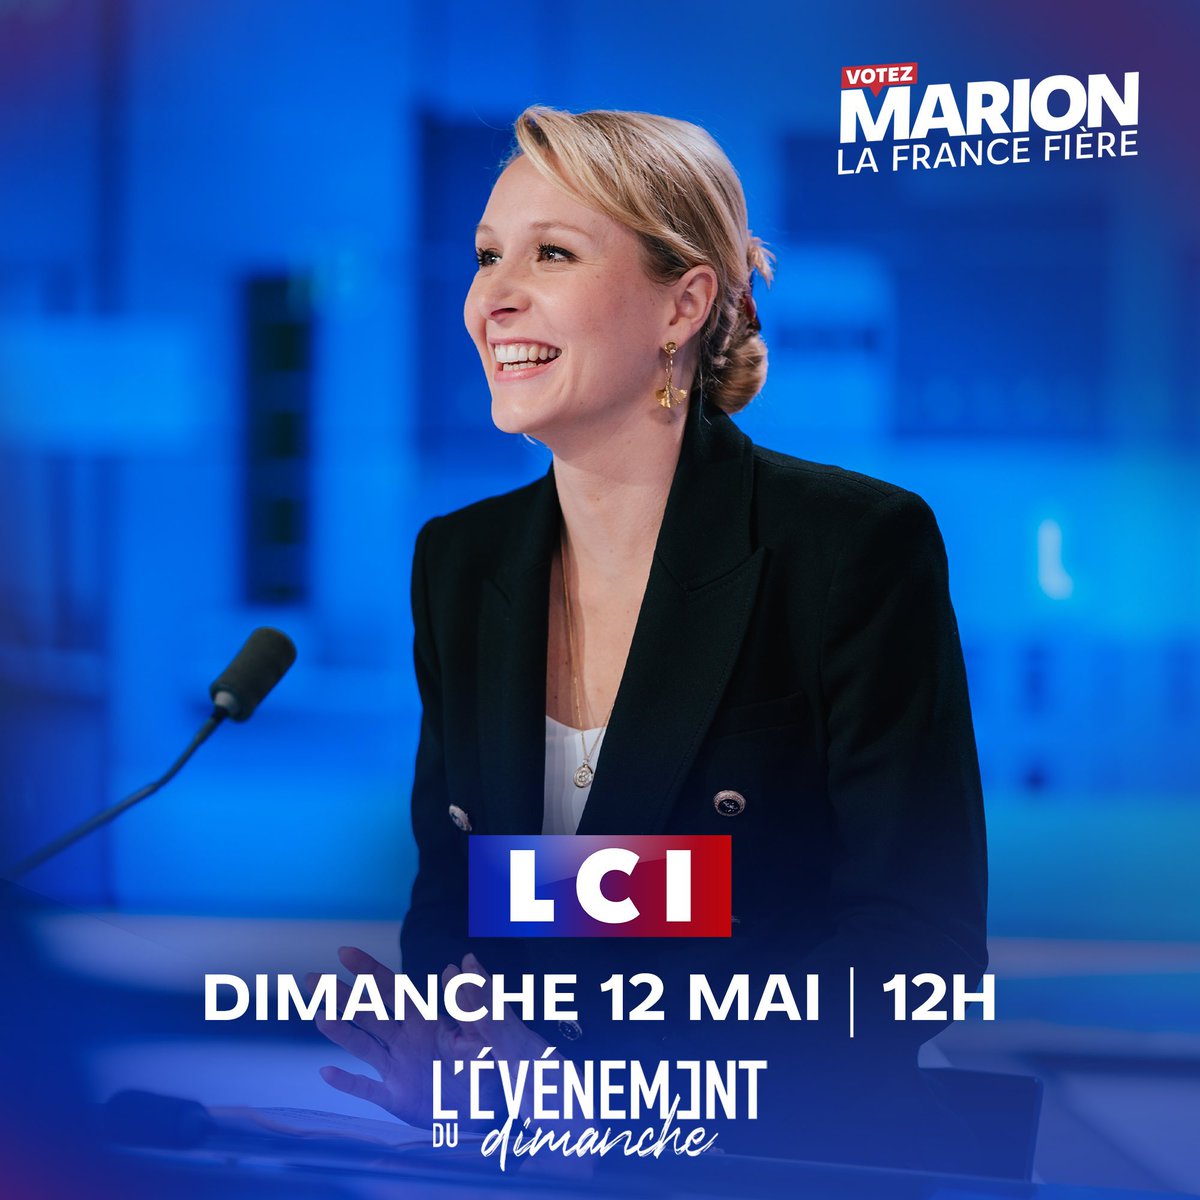 🔥À demain avec @MarionMarechal sur LCI !

#VoteeMarion